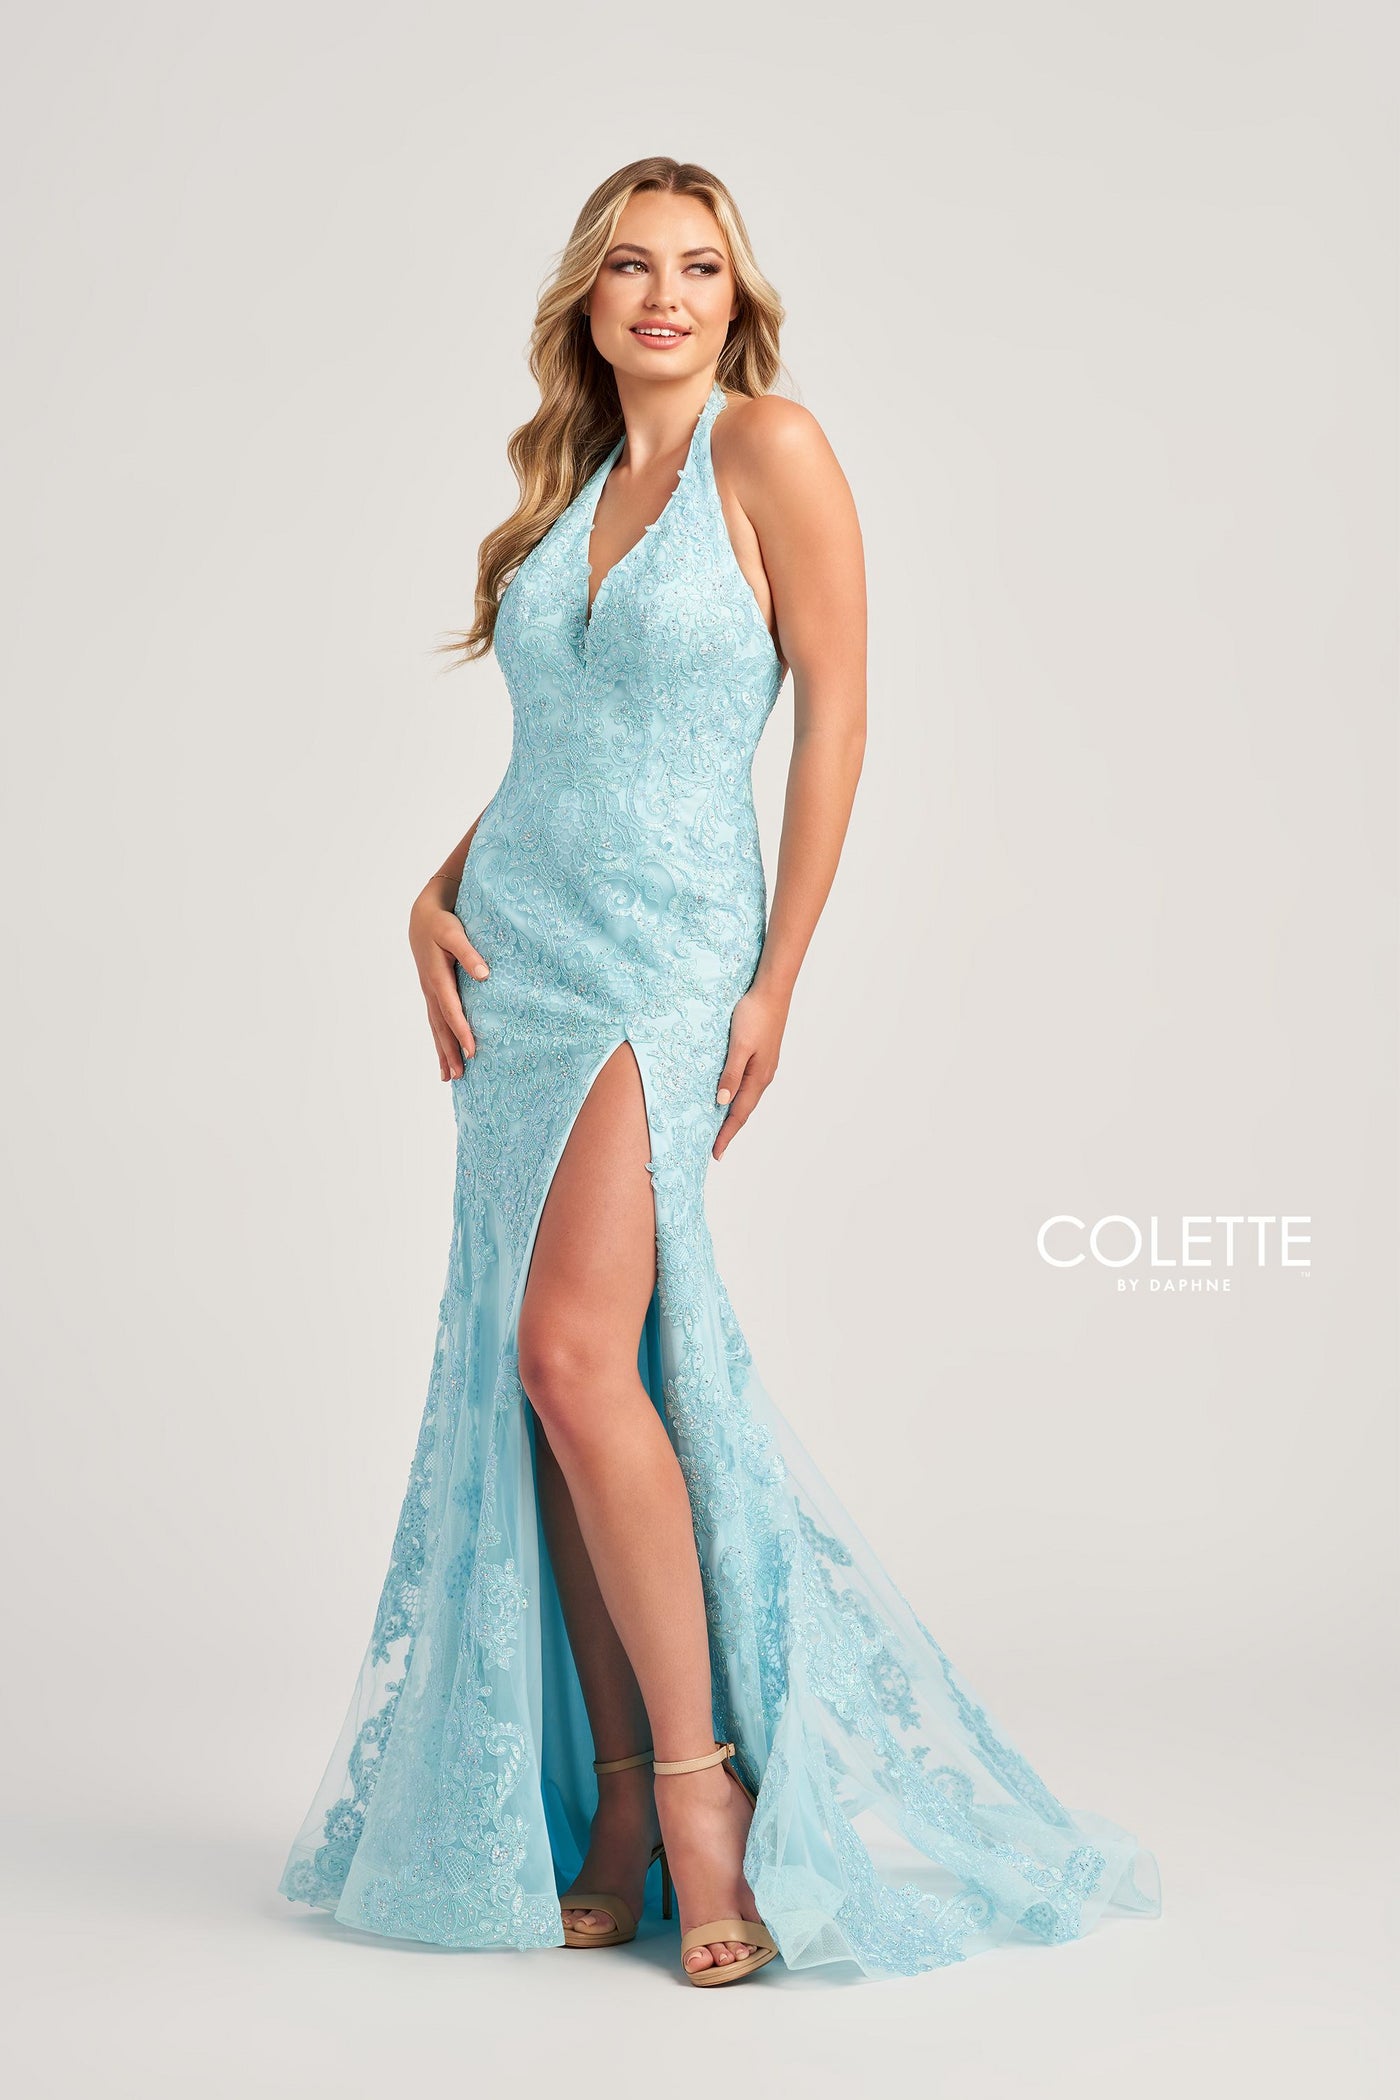 Colette CL5275